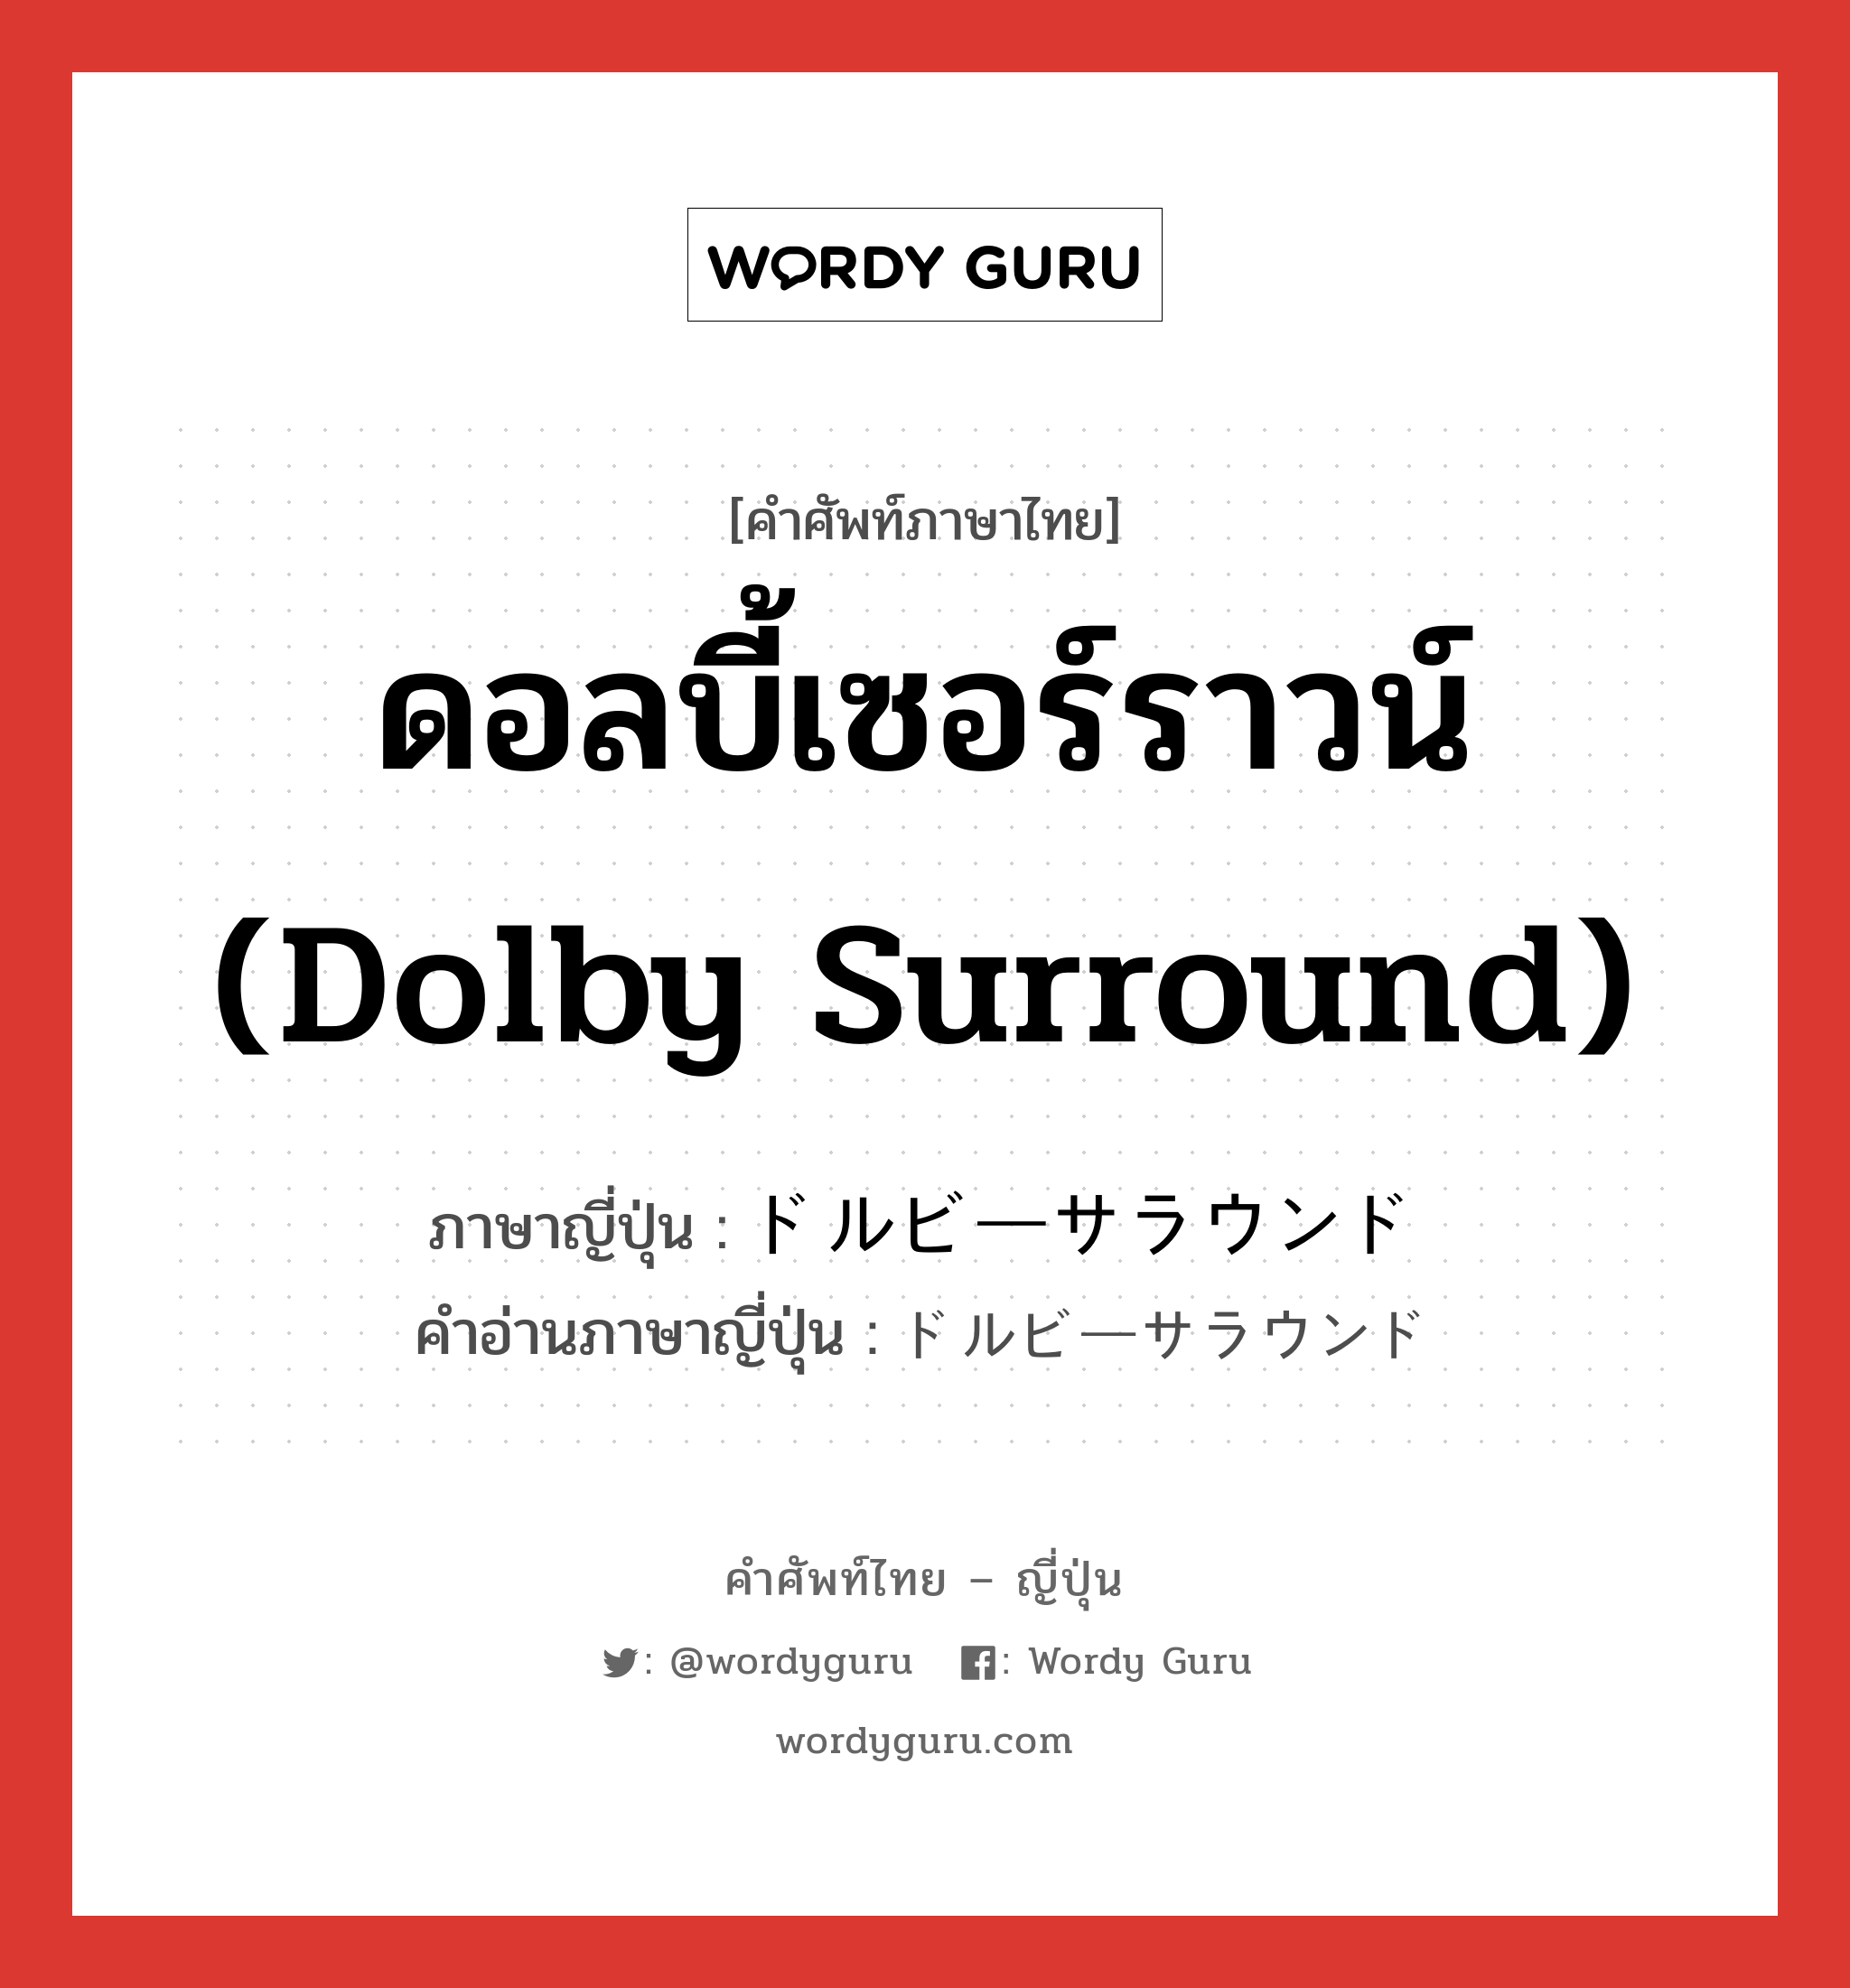 ดอลบี้เซอร์ราวน์ (Dolby surround) ภาษาญี่ปุ่นคืออะไร, คำศัพท์ภาษาไทย - ญี่ปุ่น ดอลบี้เซอร์ราวน์ (Dolby surround) ภาษาญี่ปุ่น ドルビーサラウンド คำอ่านภาษาญี่ปุ่น ドルビーサラウンド หมวด n หมวด n